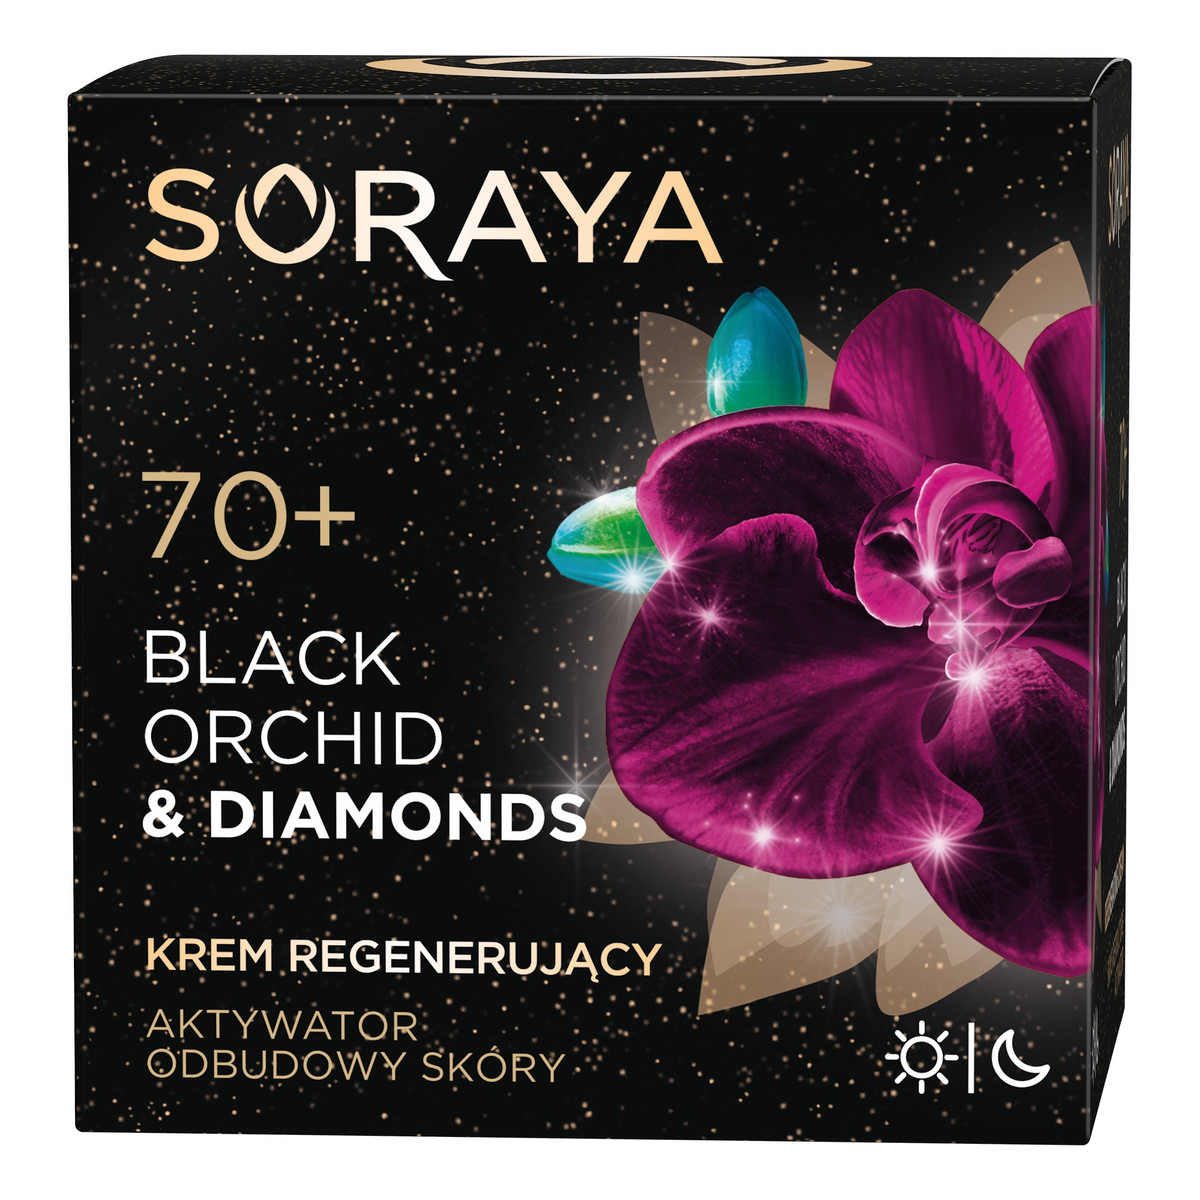 Soraya Black Orchid & Diamonds 70+ regenerujący krem do twarzy na dzień i na noc 50ml